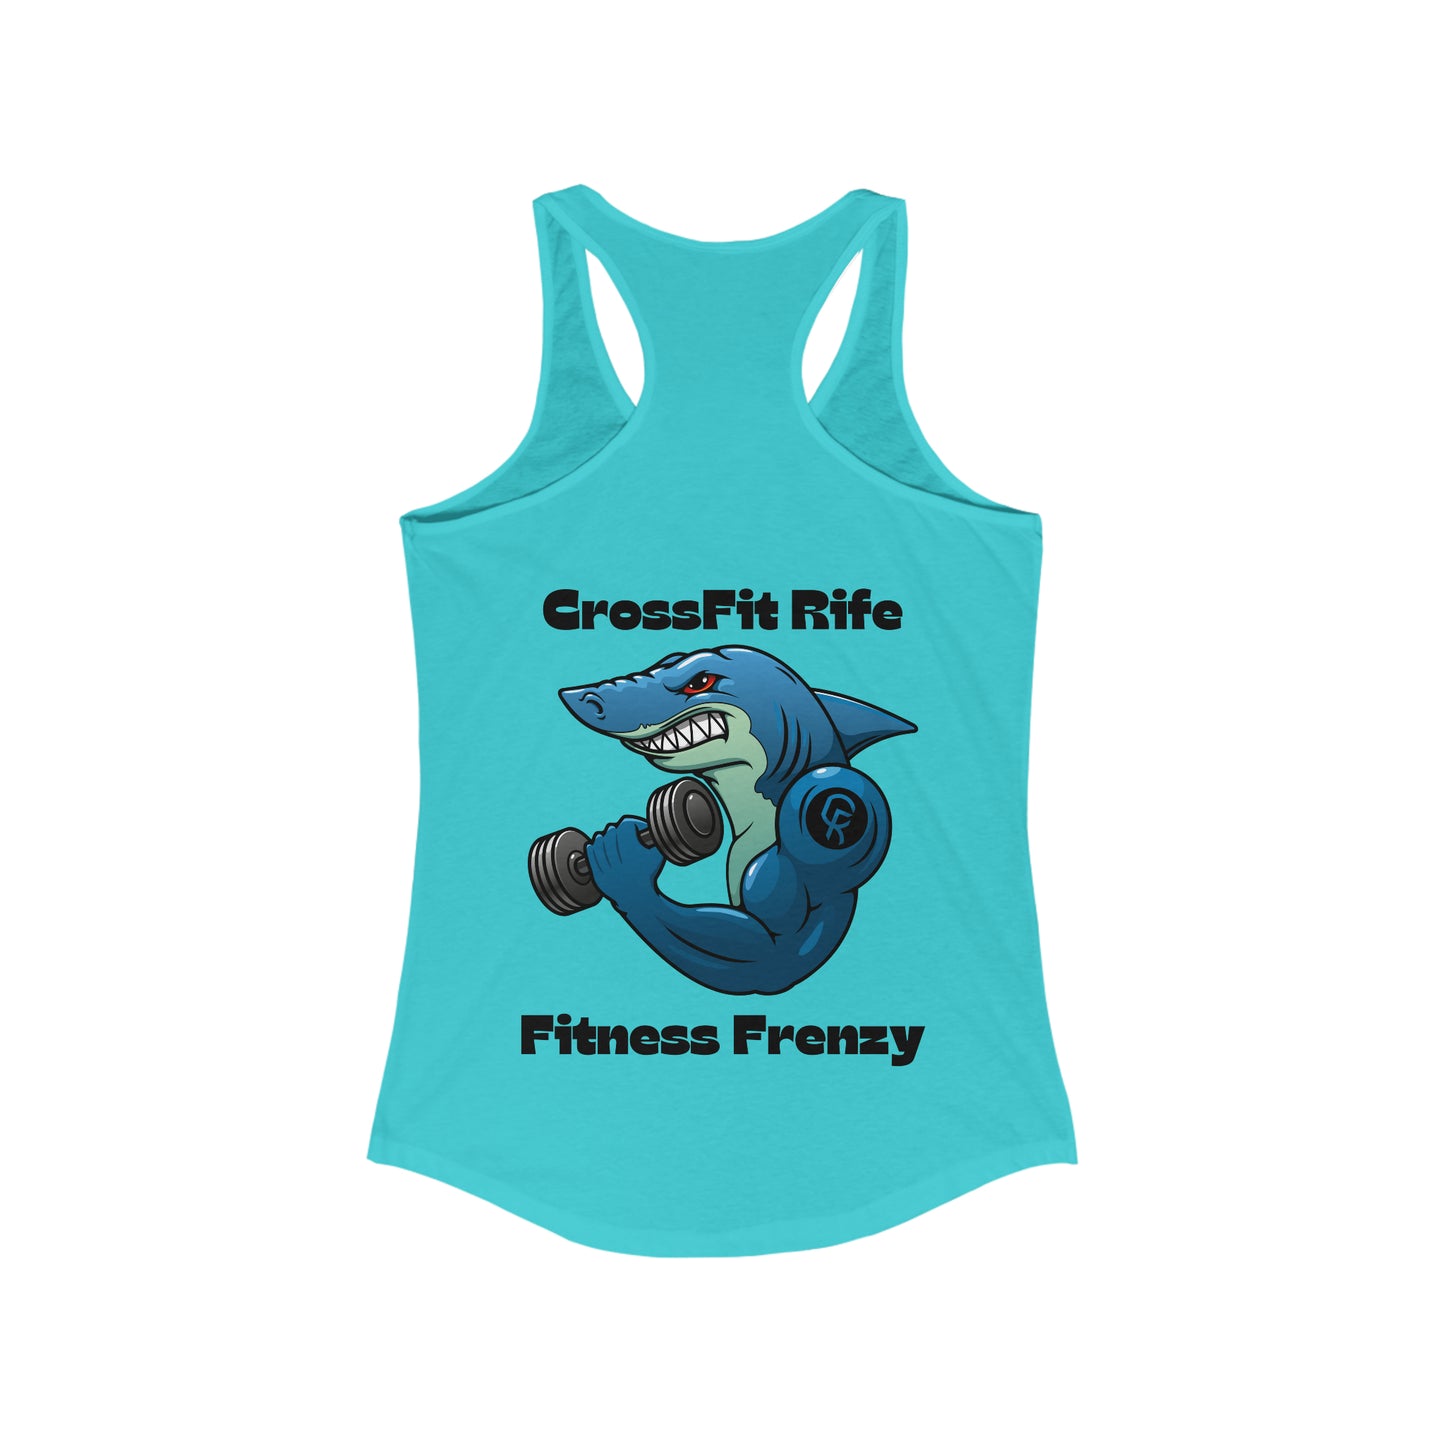 Fitness Frenzy Tank